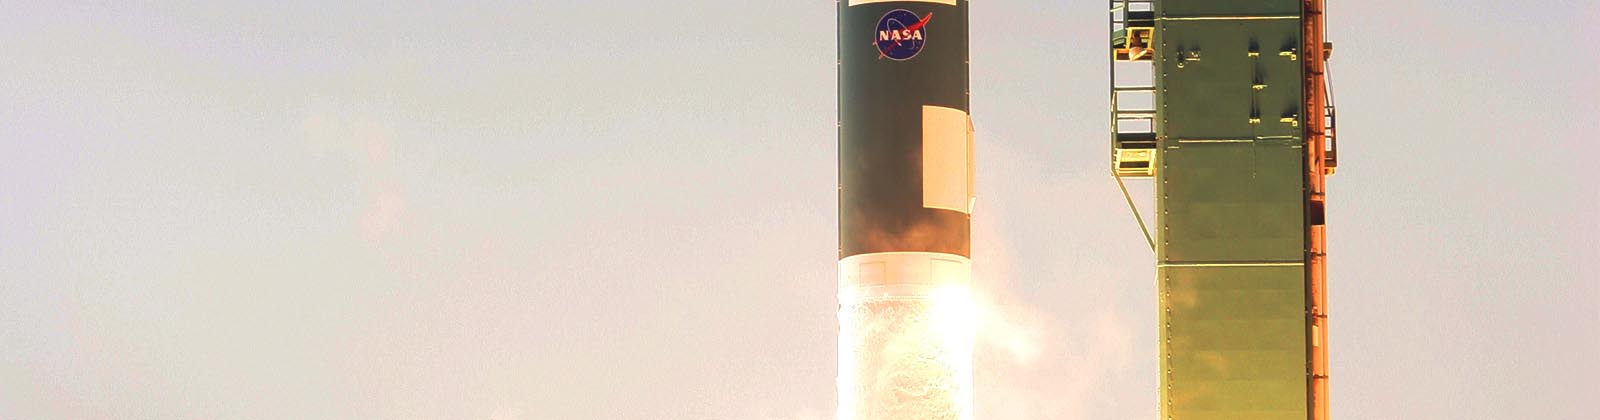 Lancement du satellite STSS-ATRR par la fusée Delta